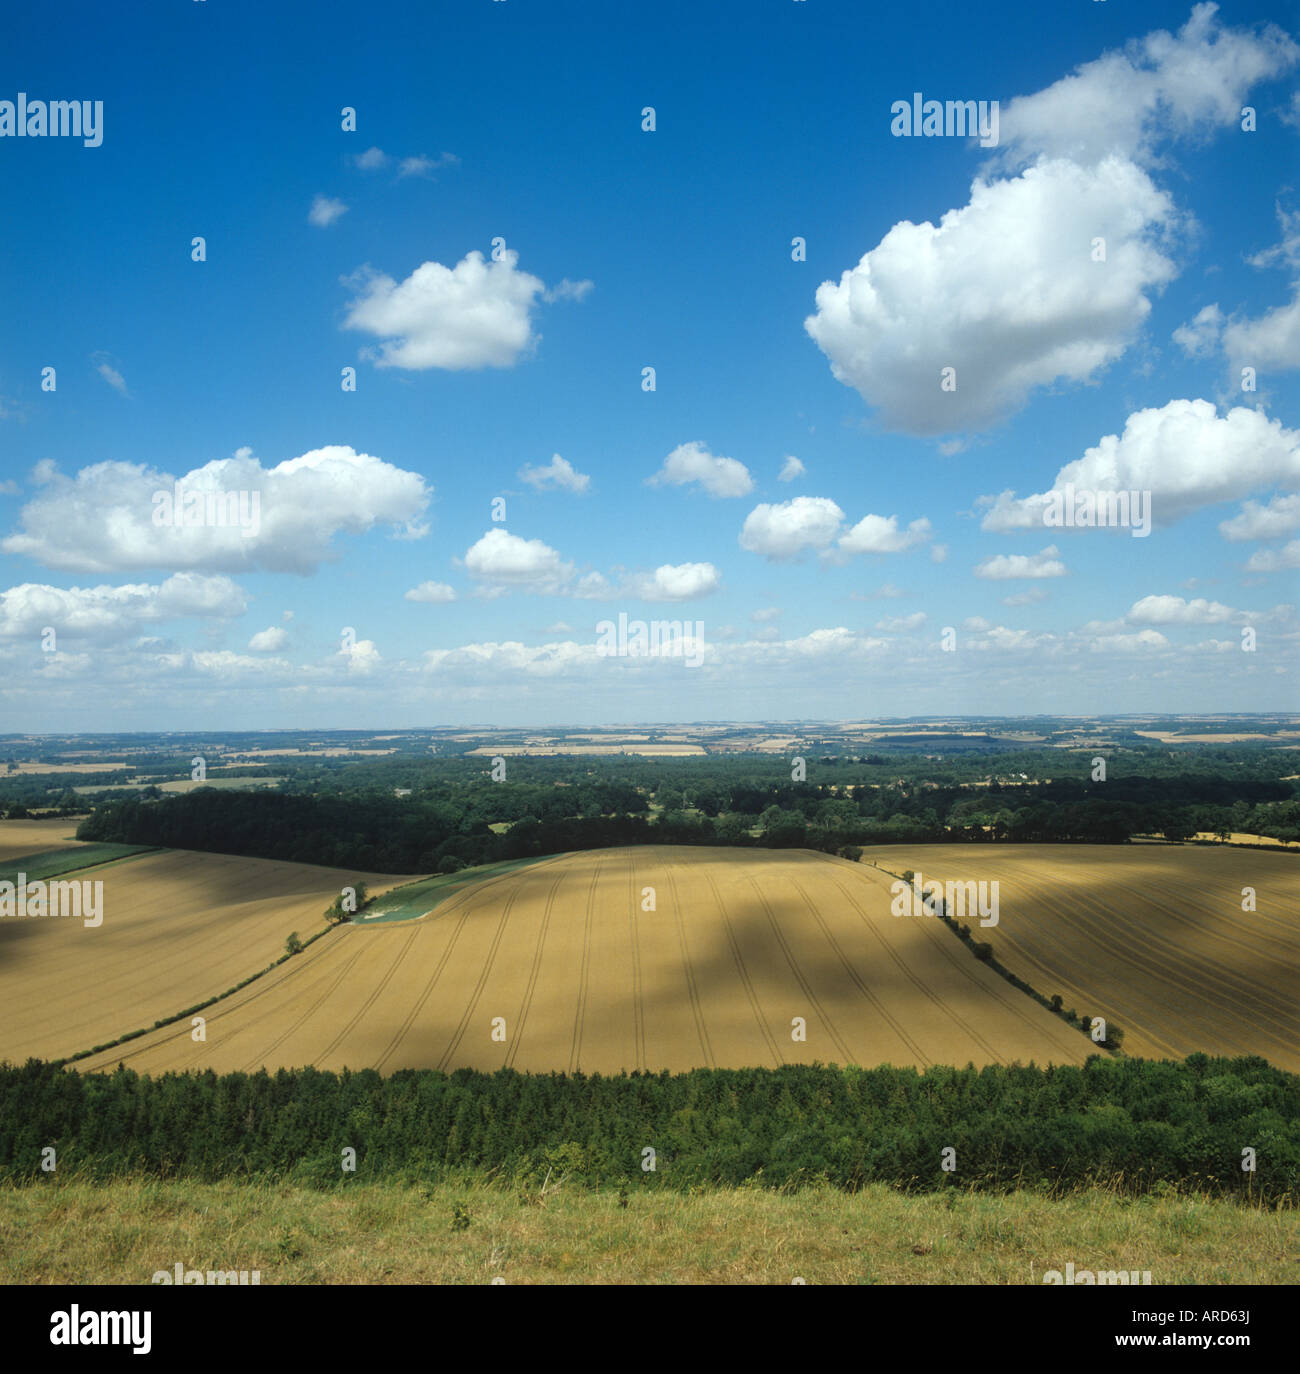 Cerros descripción general de cultivos de trigo maduras y paisaje de verano mezclados con el cielo azul y las nubes Foto de stock